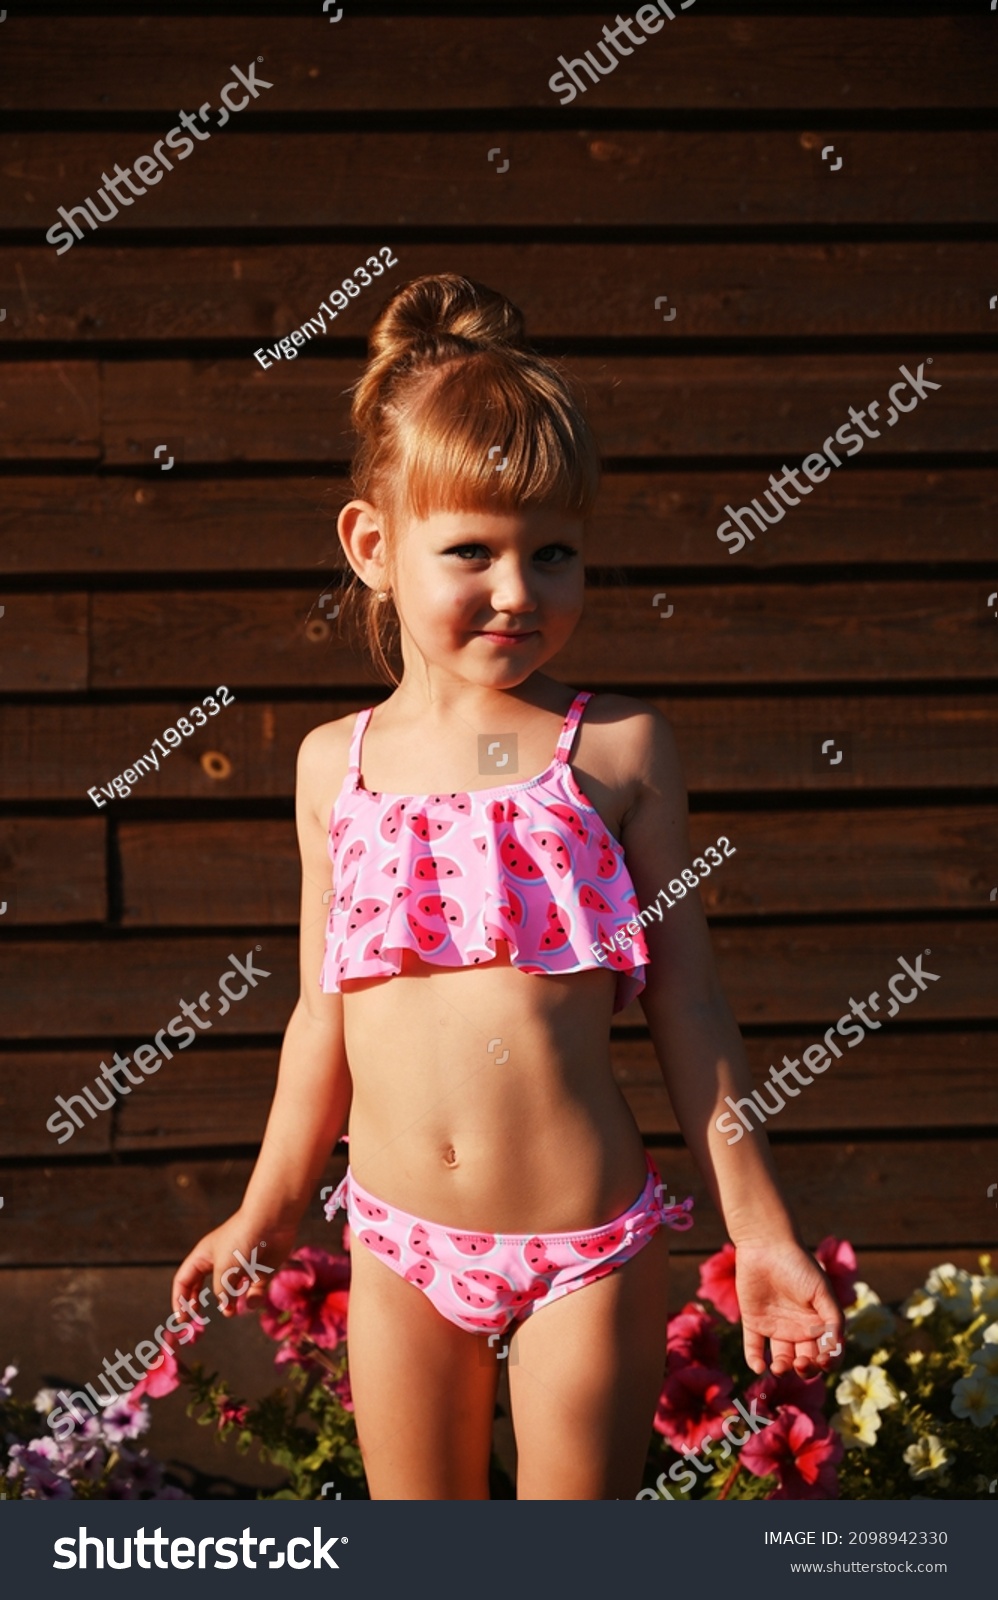 Young little girls bikini  11,642 Little Girl Bikinis Images, Stock Photos & Vectors ...